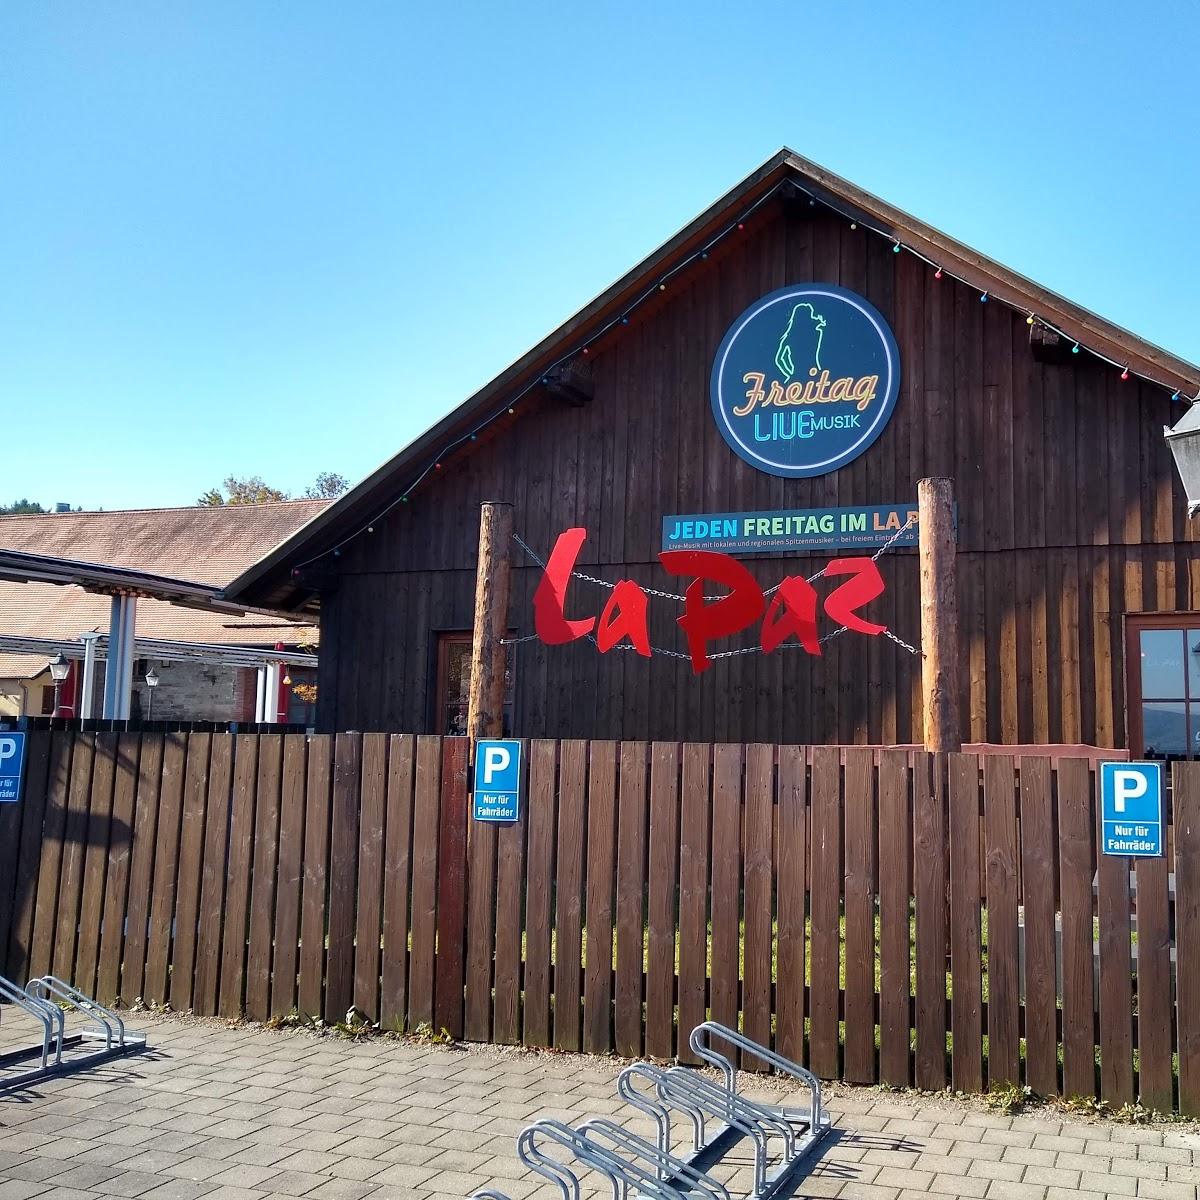 Restaurant "La Paz" in Hechingen